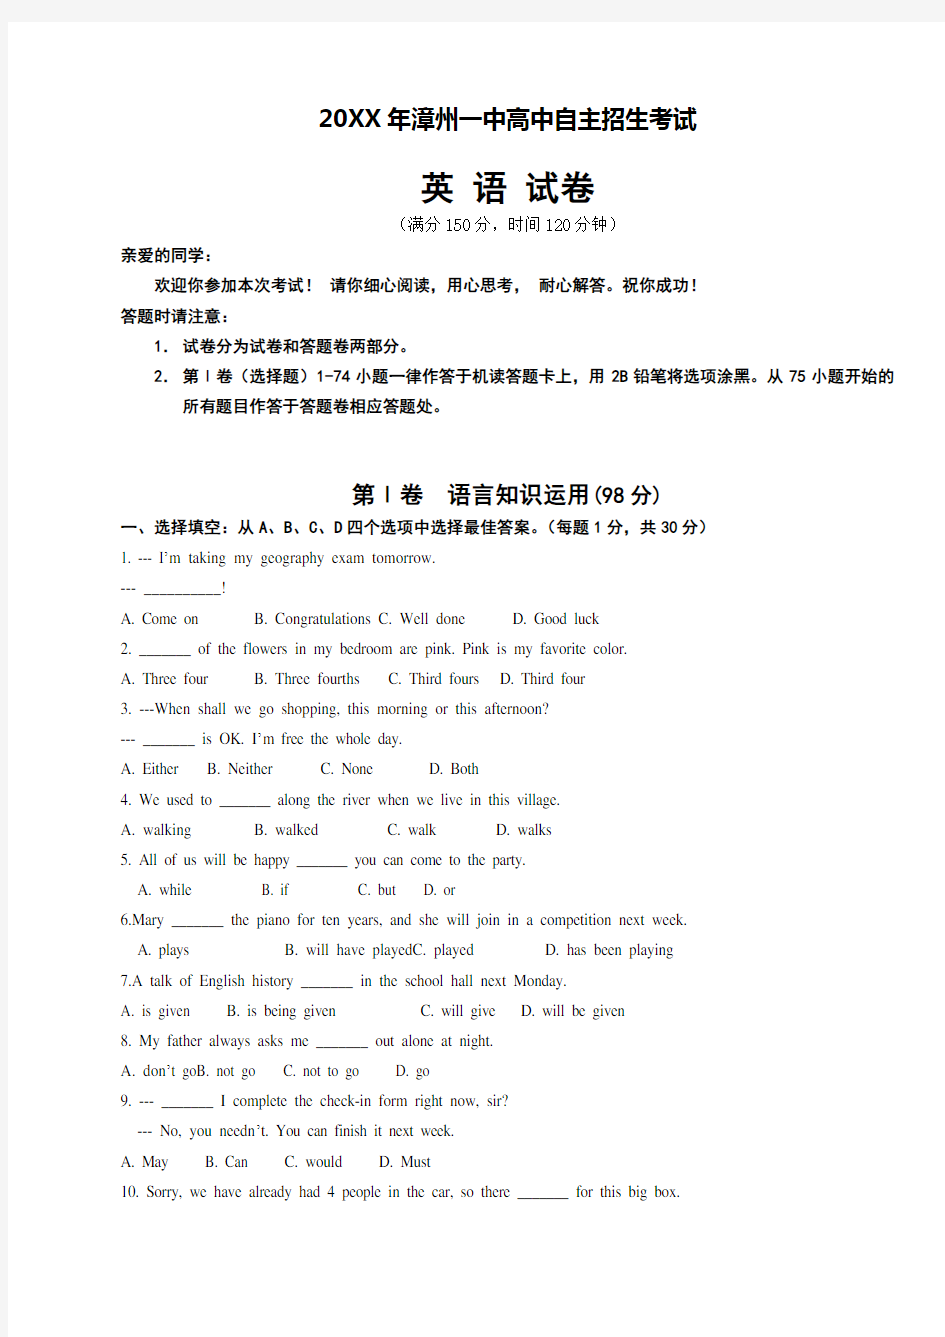 漳州一中高中自主招生考试英语试卷及答案